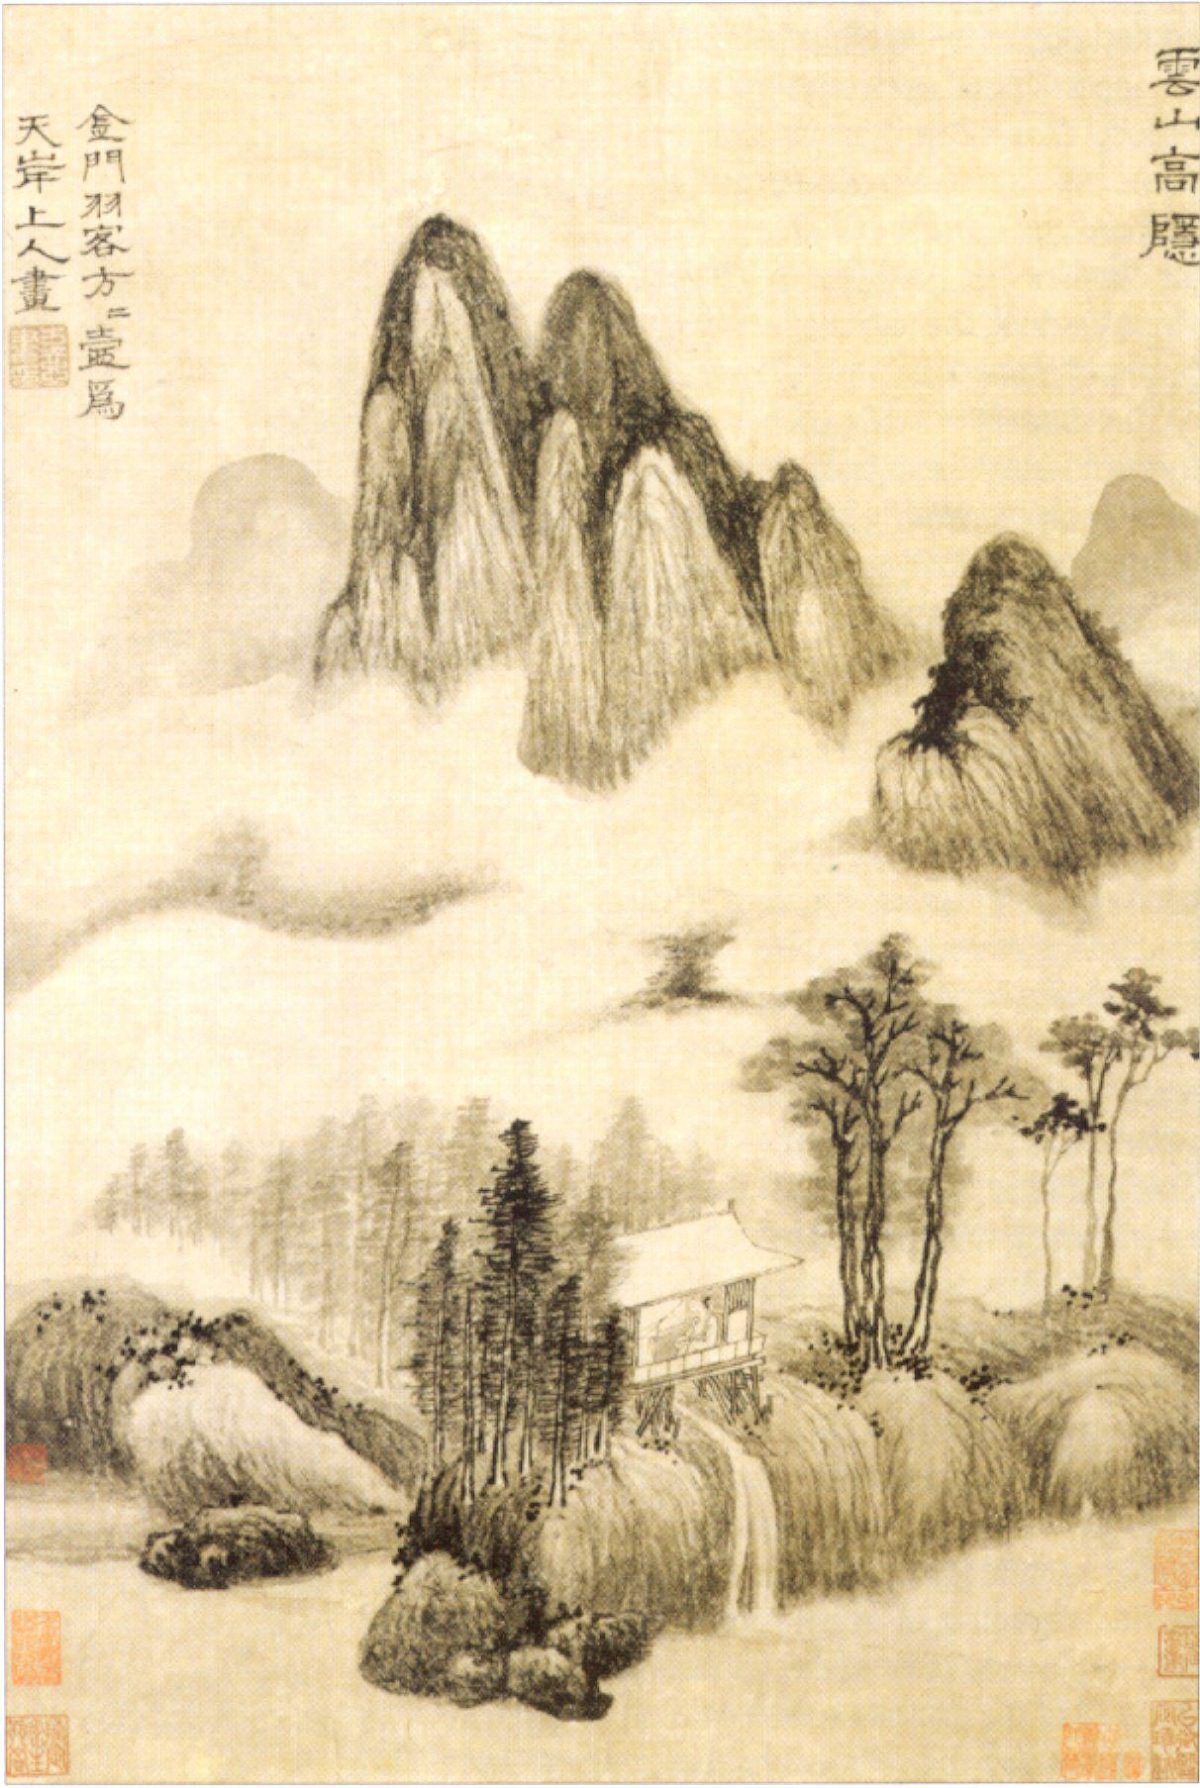 Tác phẩm “Vân Sơn Cao Ẩn,” thế kỷ 14, do họa sĩ Phương Phương Hồ vẽ. Tranh in trên giấy, Viện bảo tàng Honolulu Academy of Arts. (Ảnh: Tư liệu công hữu)